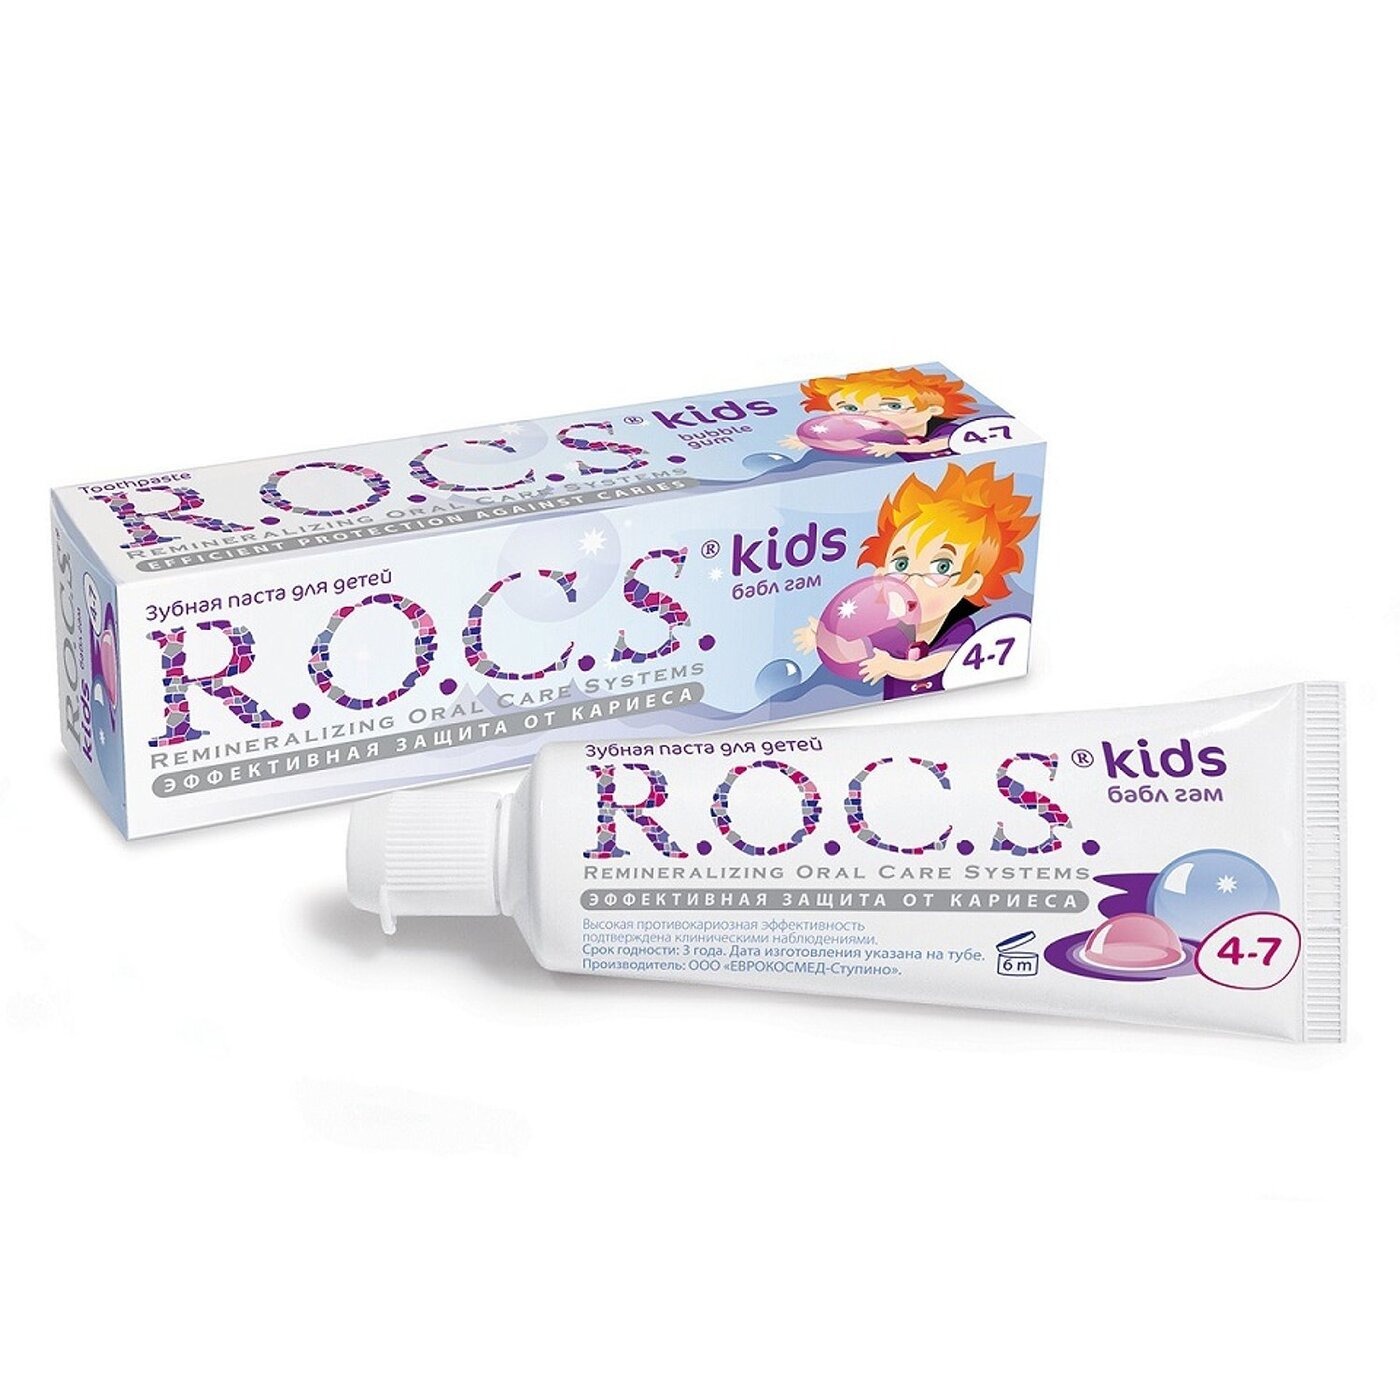 Зубная паста R.O.C.S. для детей бабл гам 45 гр зубная паста r o c s для детей бабл гам 45 гр х 2 шт